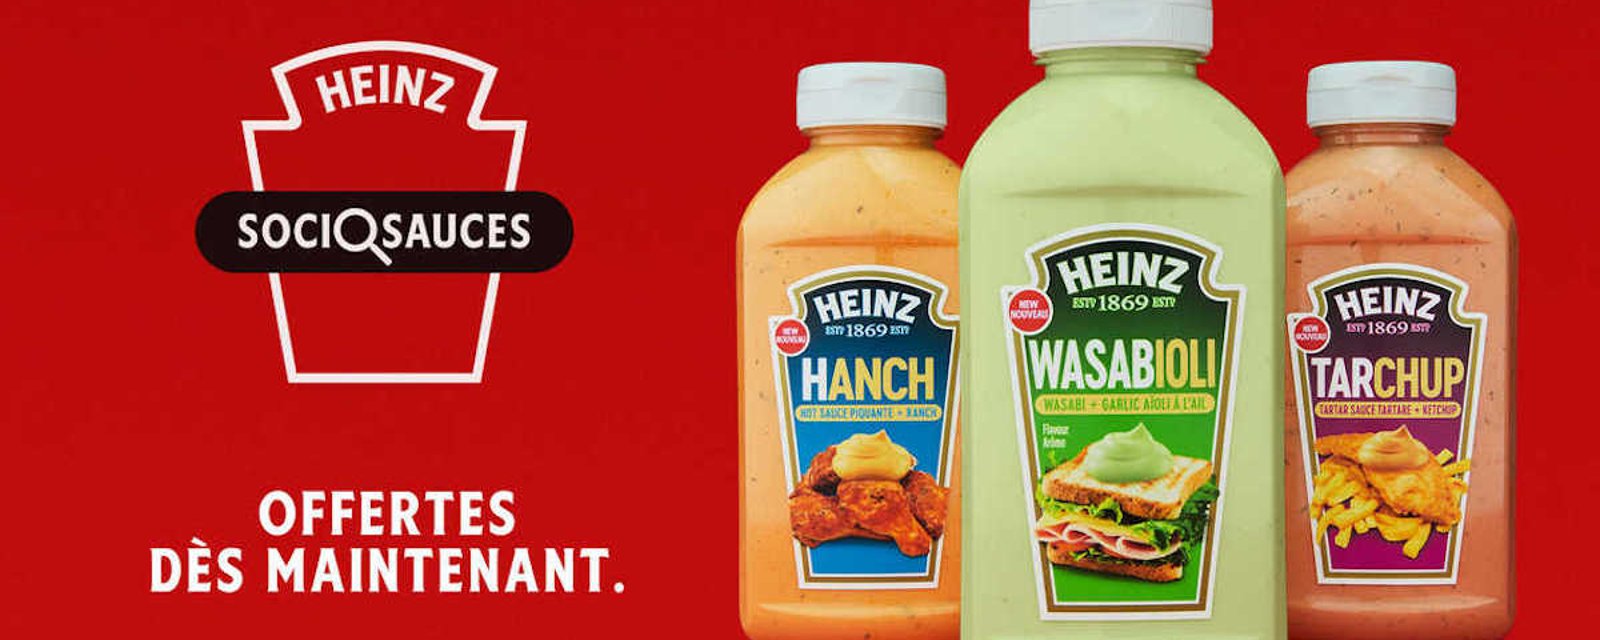 Heinz a créé 3 nouvelles sauces intrigantes